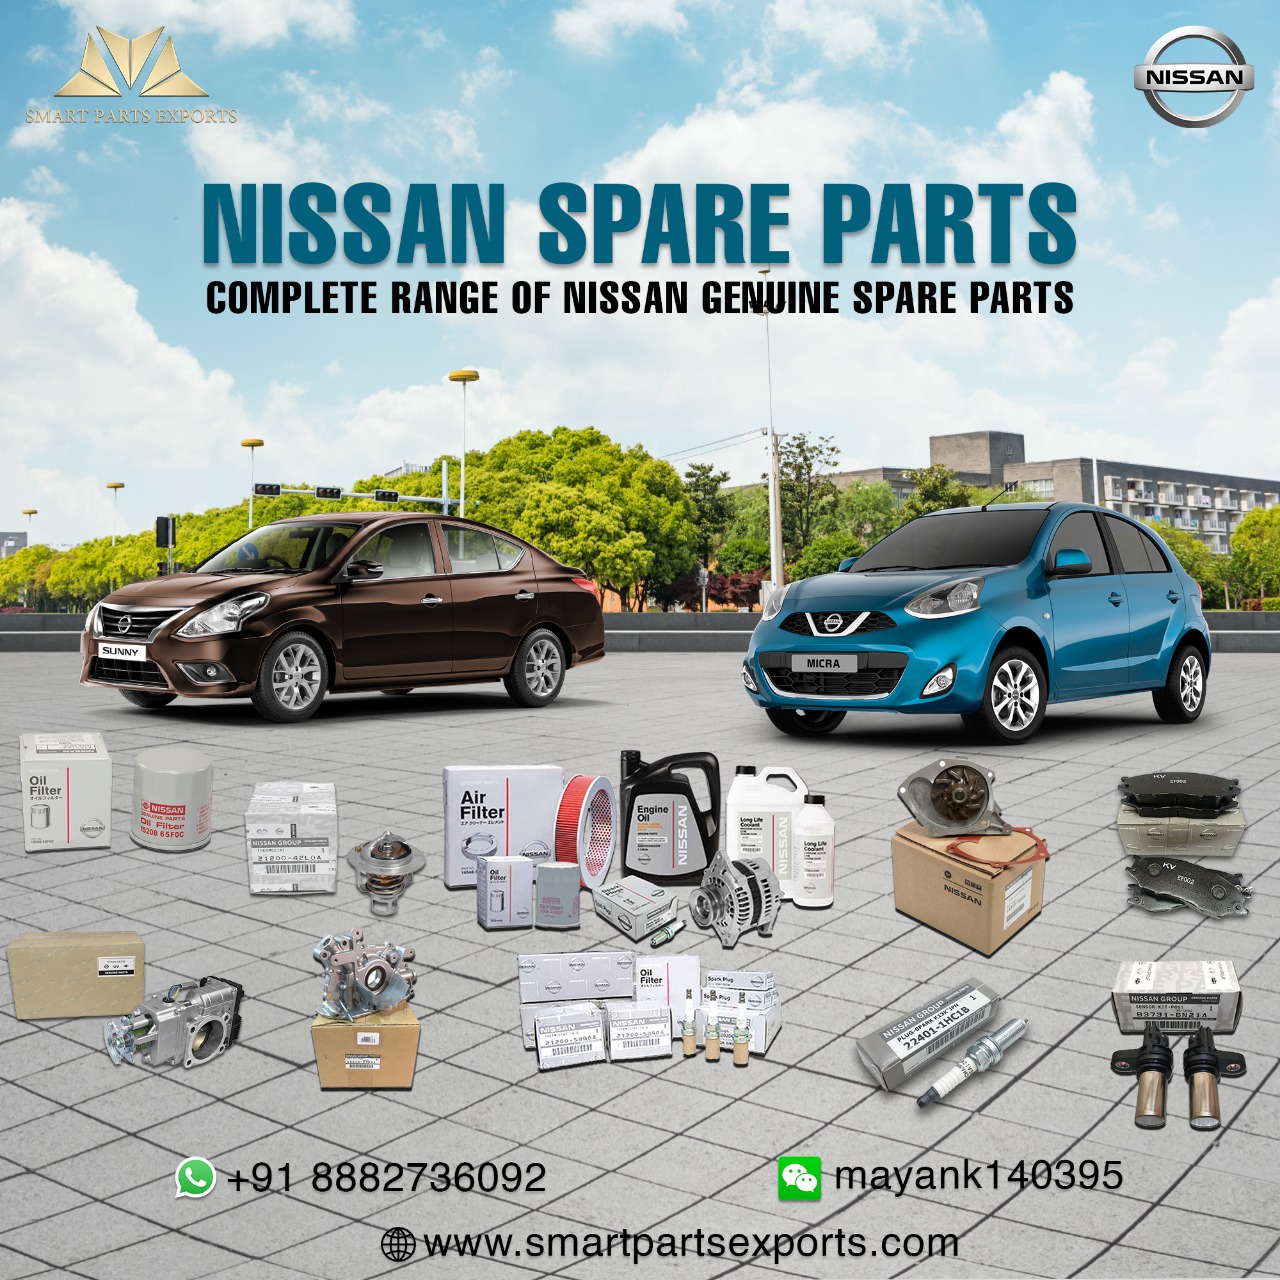 Nissan genuine parts